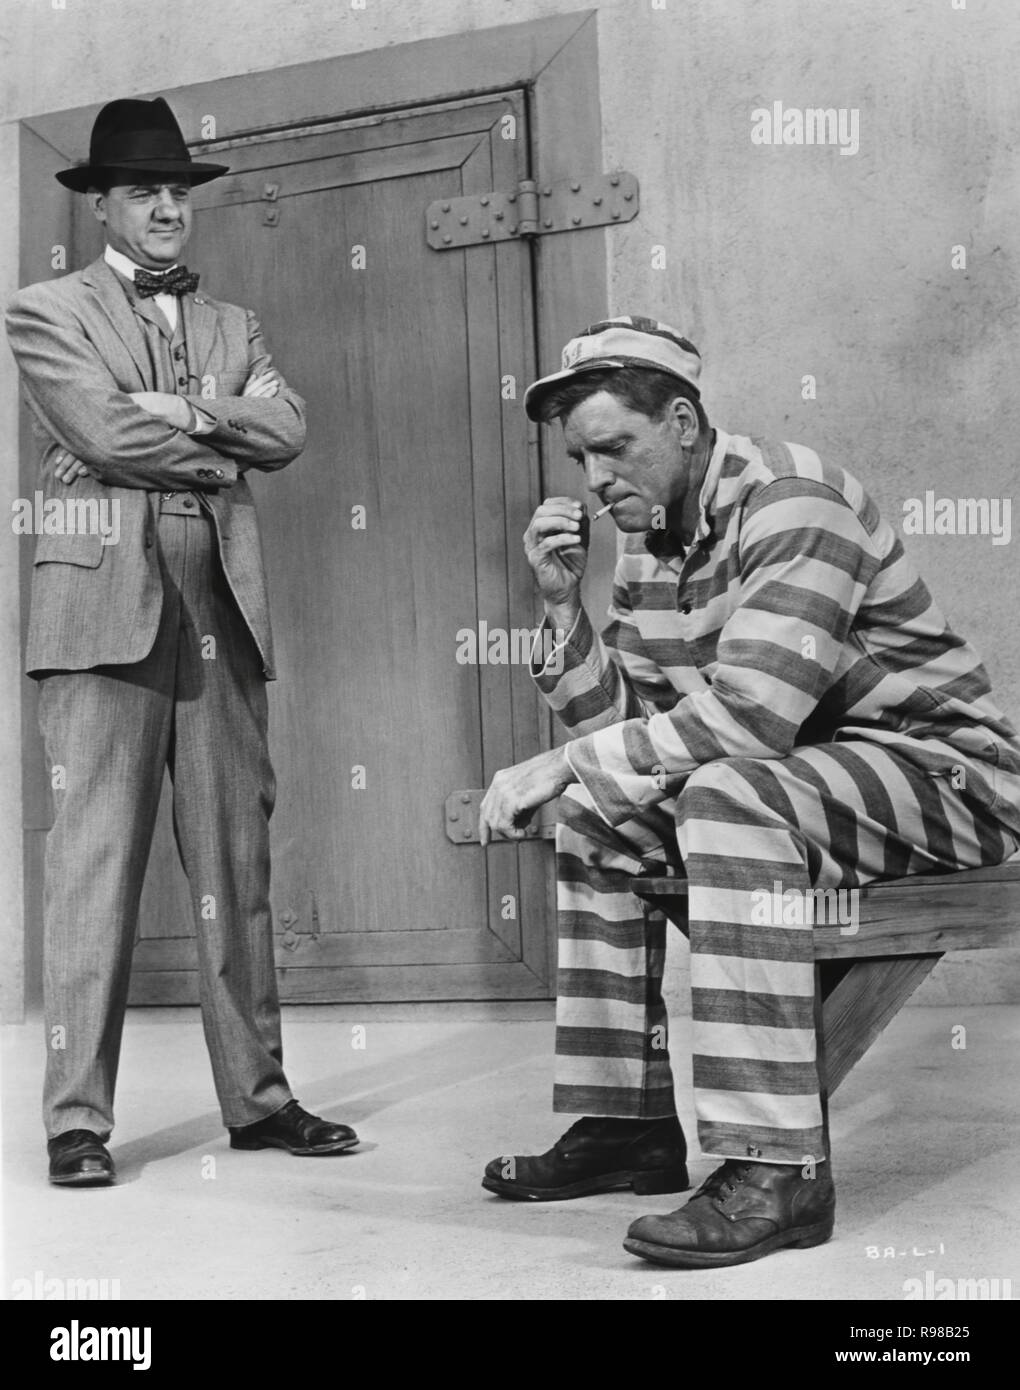 Original Film Titel: Birdman von Alcatraz. Englischer Titel: Birdman von Alcatraz. Jahr: 1962. Regie: John FRANKENHEIMER. Stars: Karl Malden; Burt Lancaster. Quelle: UNITED ARTISTS/Album Stockfoto